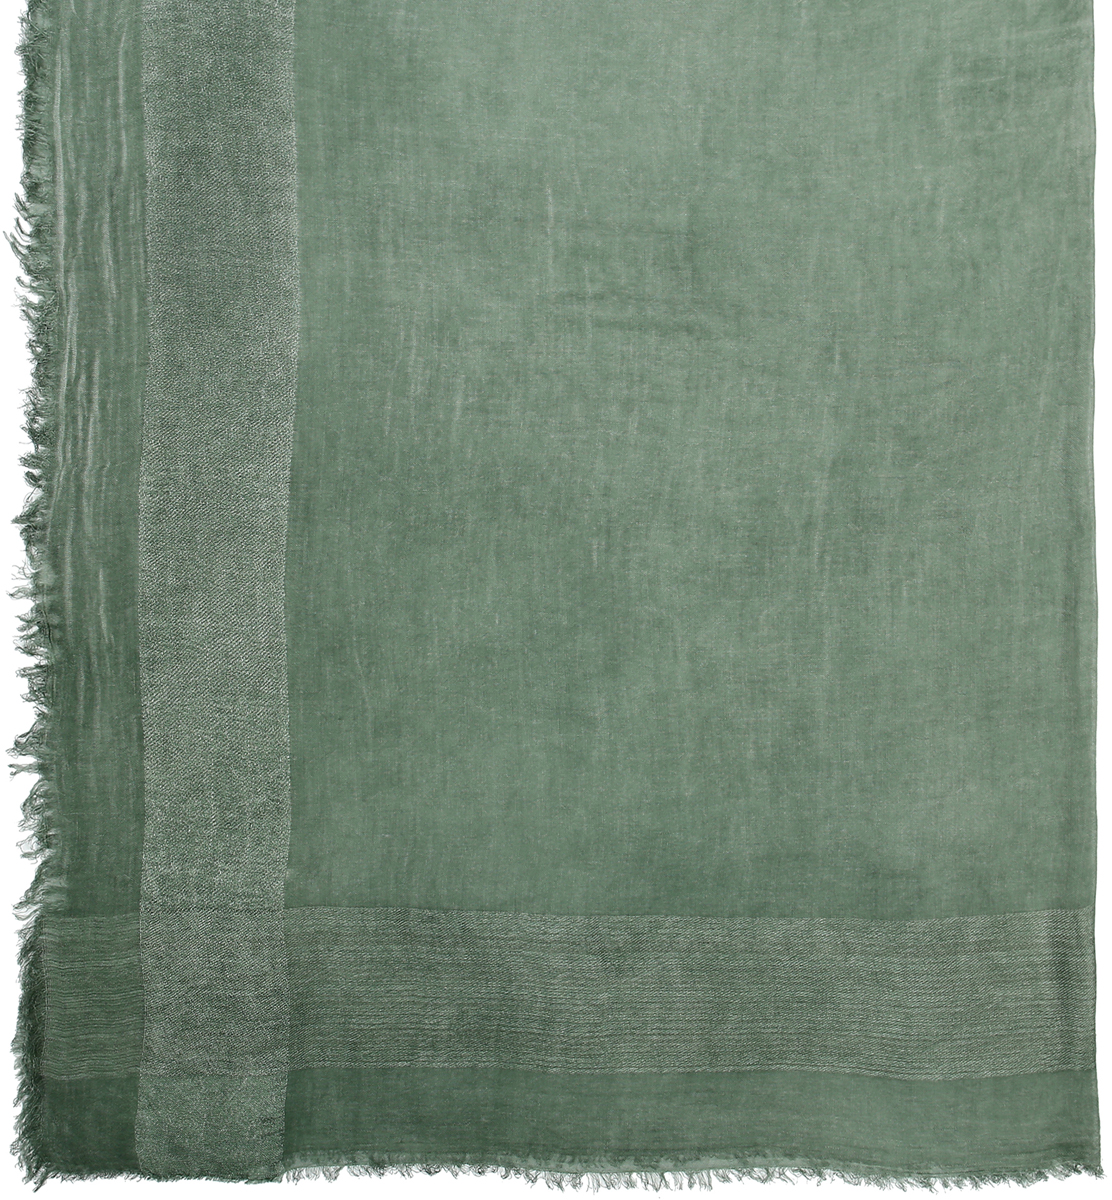 Платок женский Модные истории, цвет: зеленый. 23/0581/243. Размер 135 см x 135 см